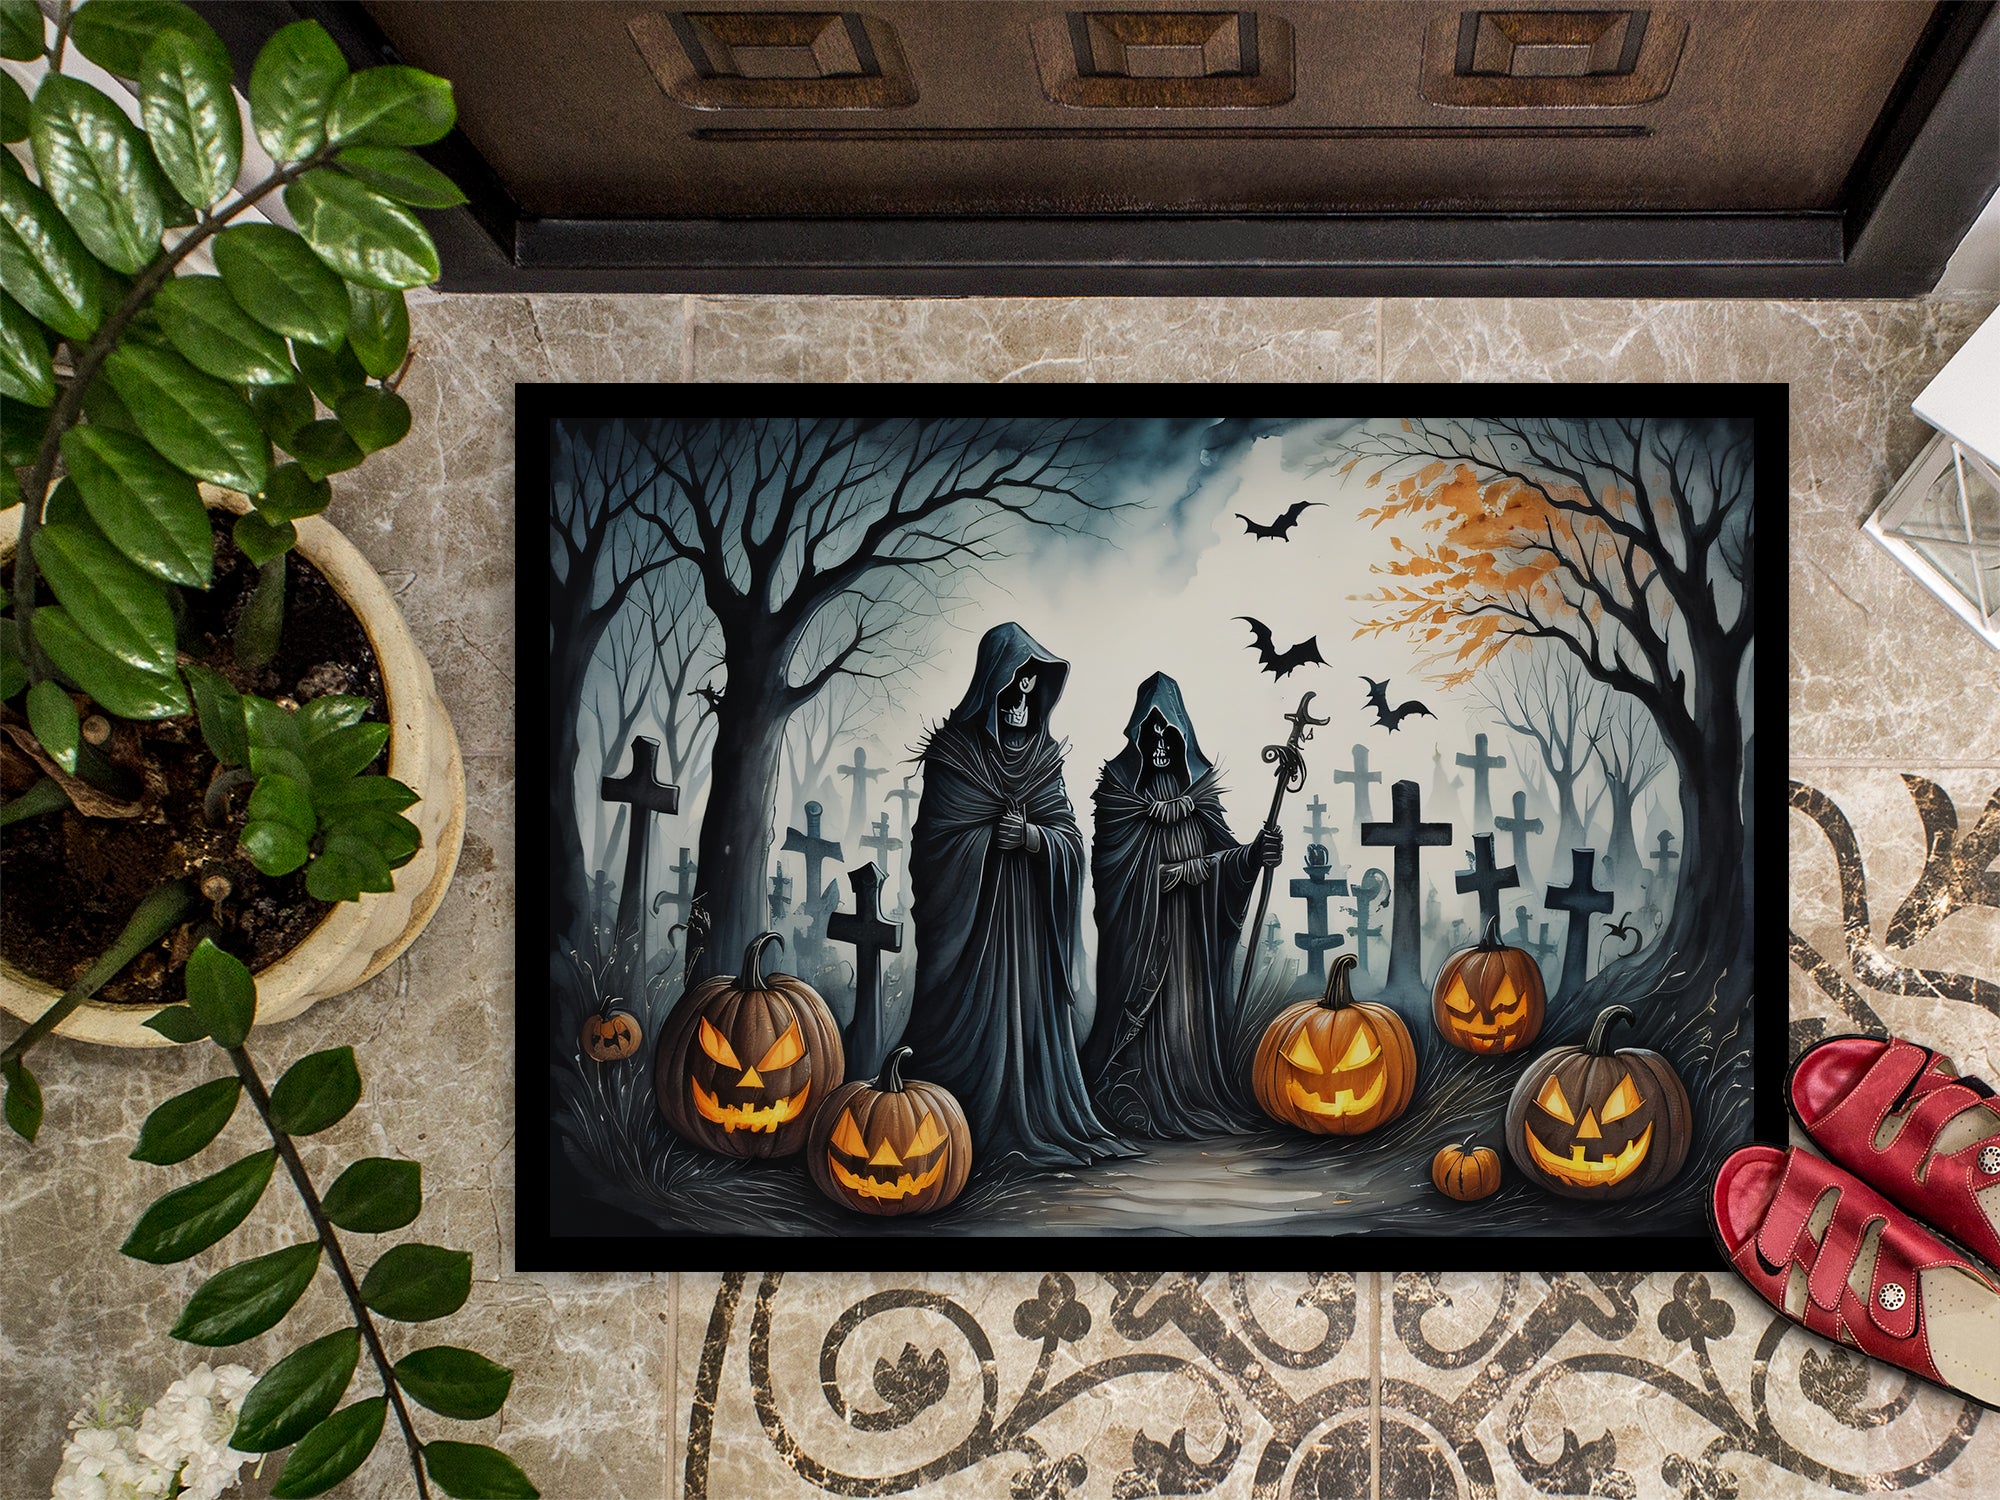 The Grim Reaper Spooky Halloween Doormat 18x27